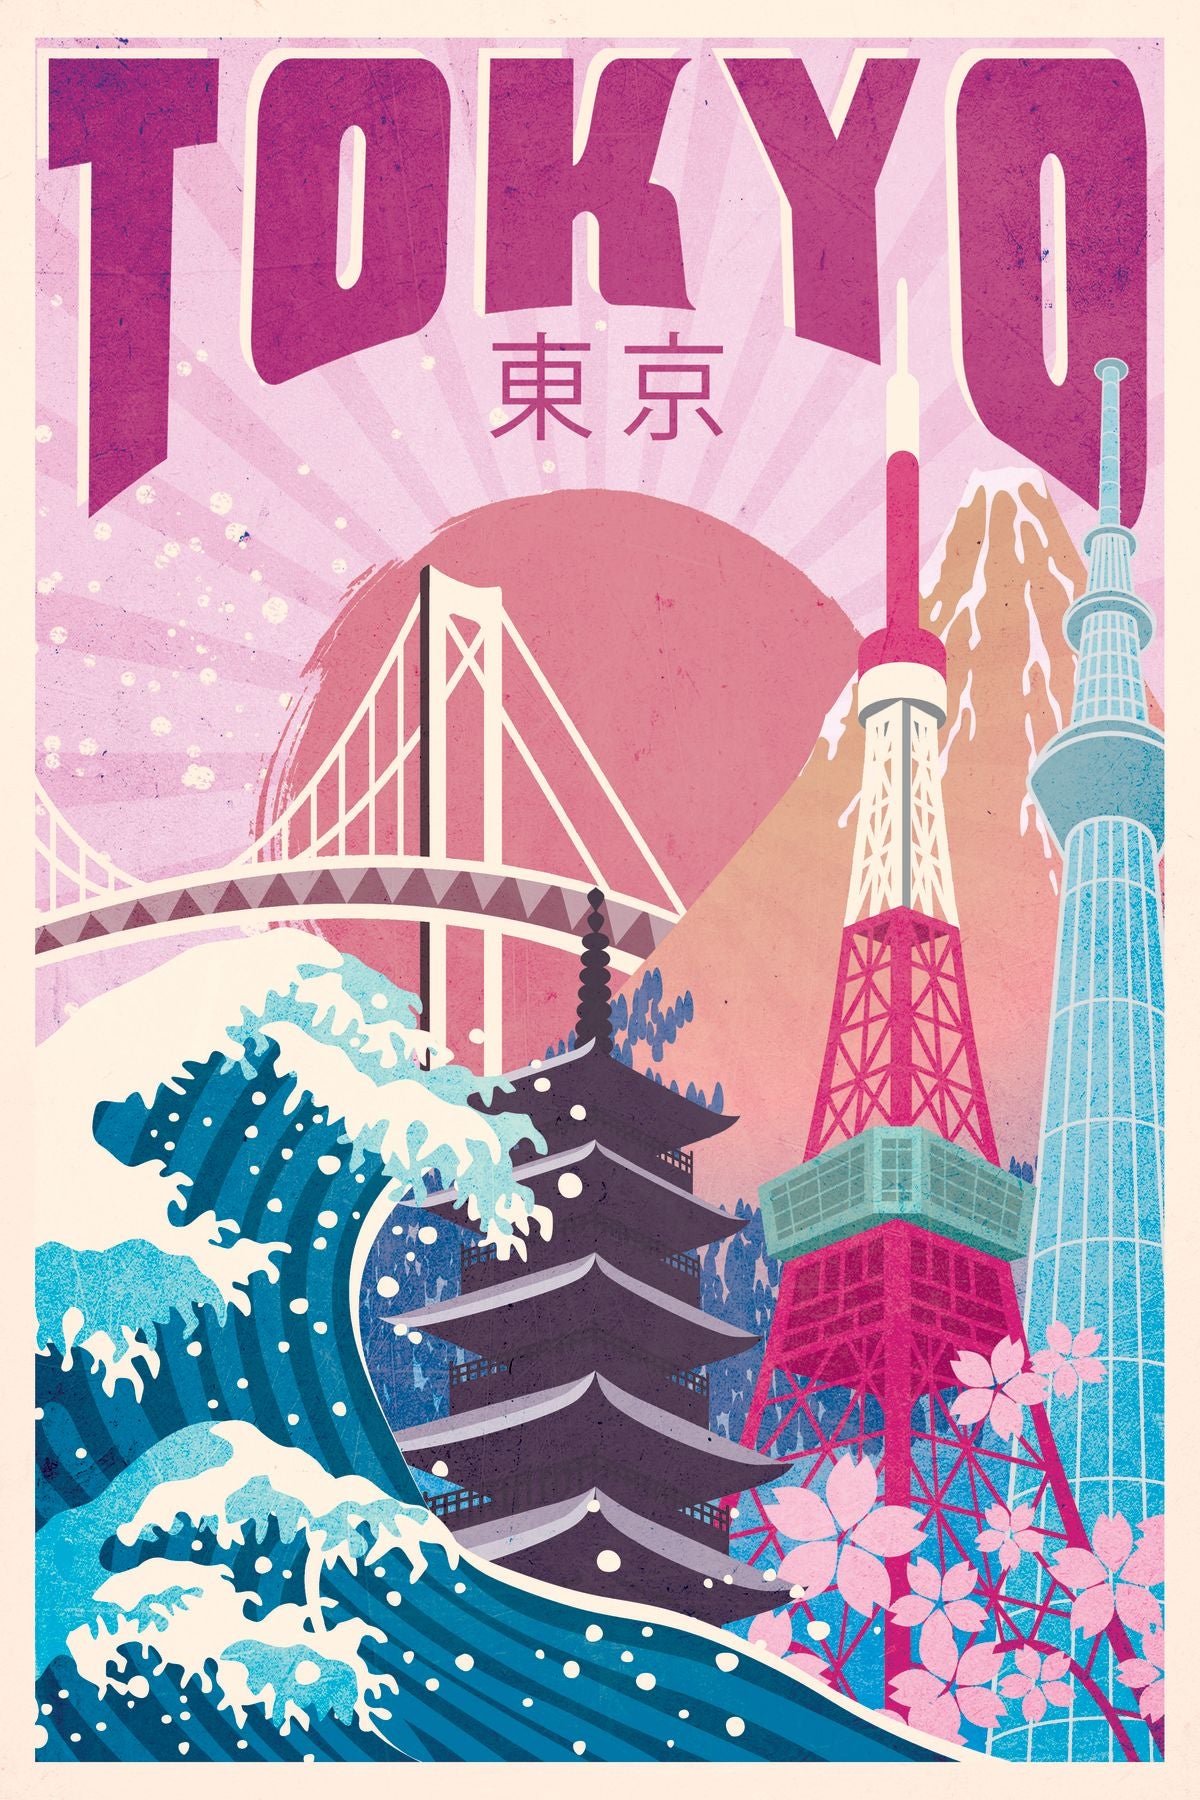 Tokyo Tourism Vintage Poster